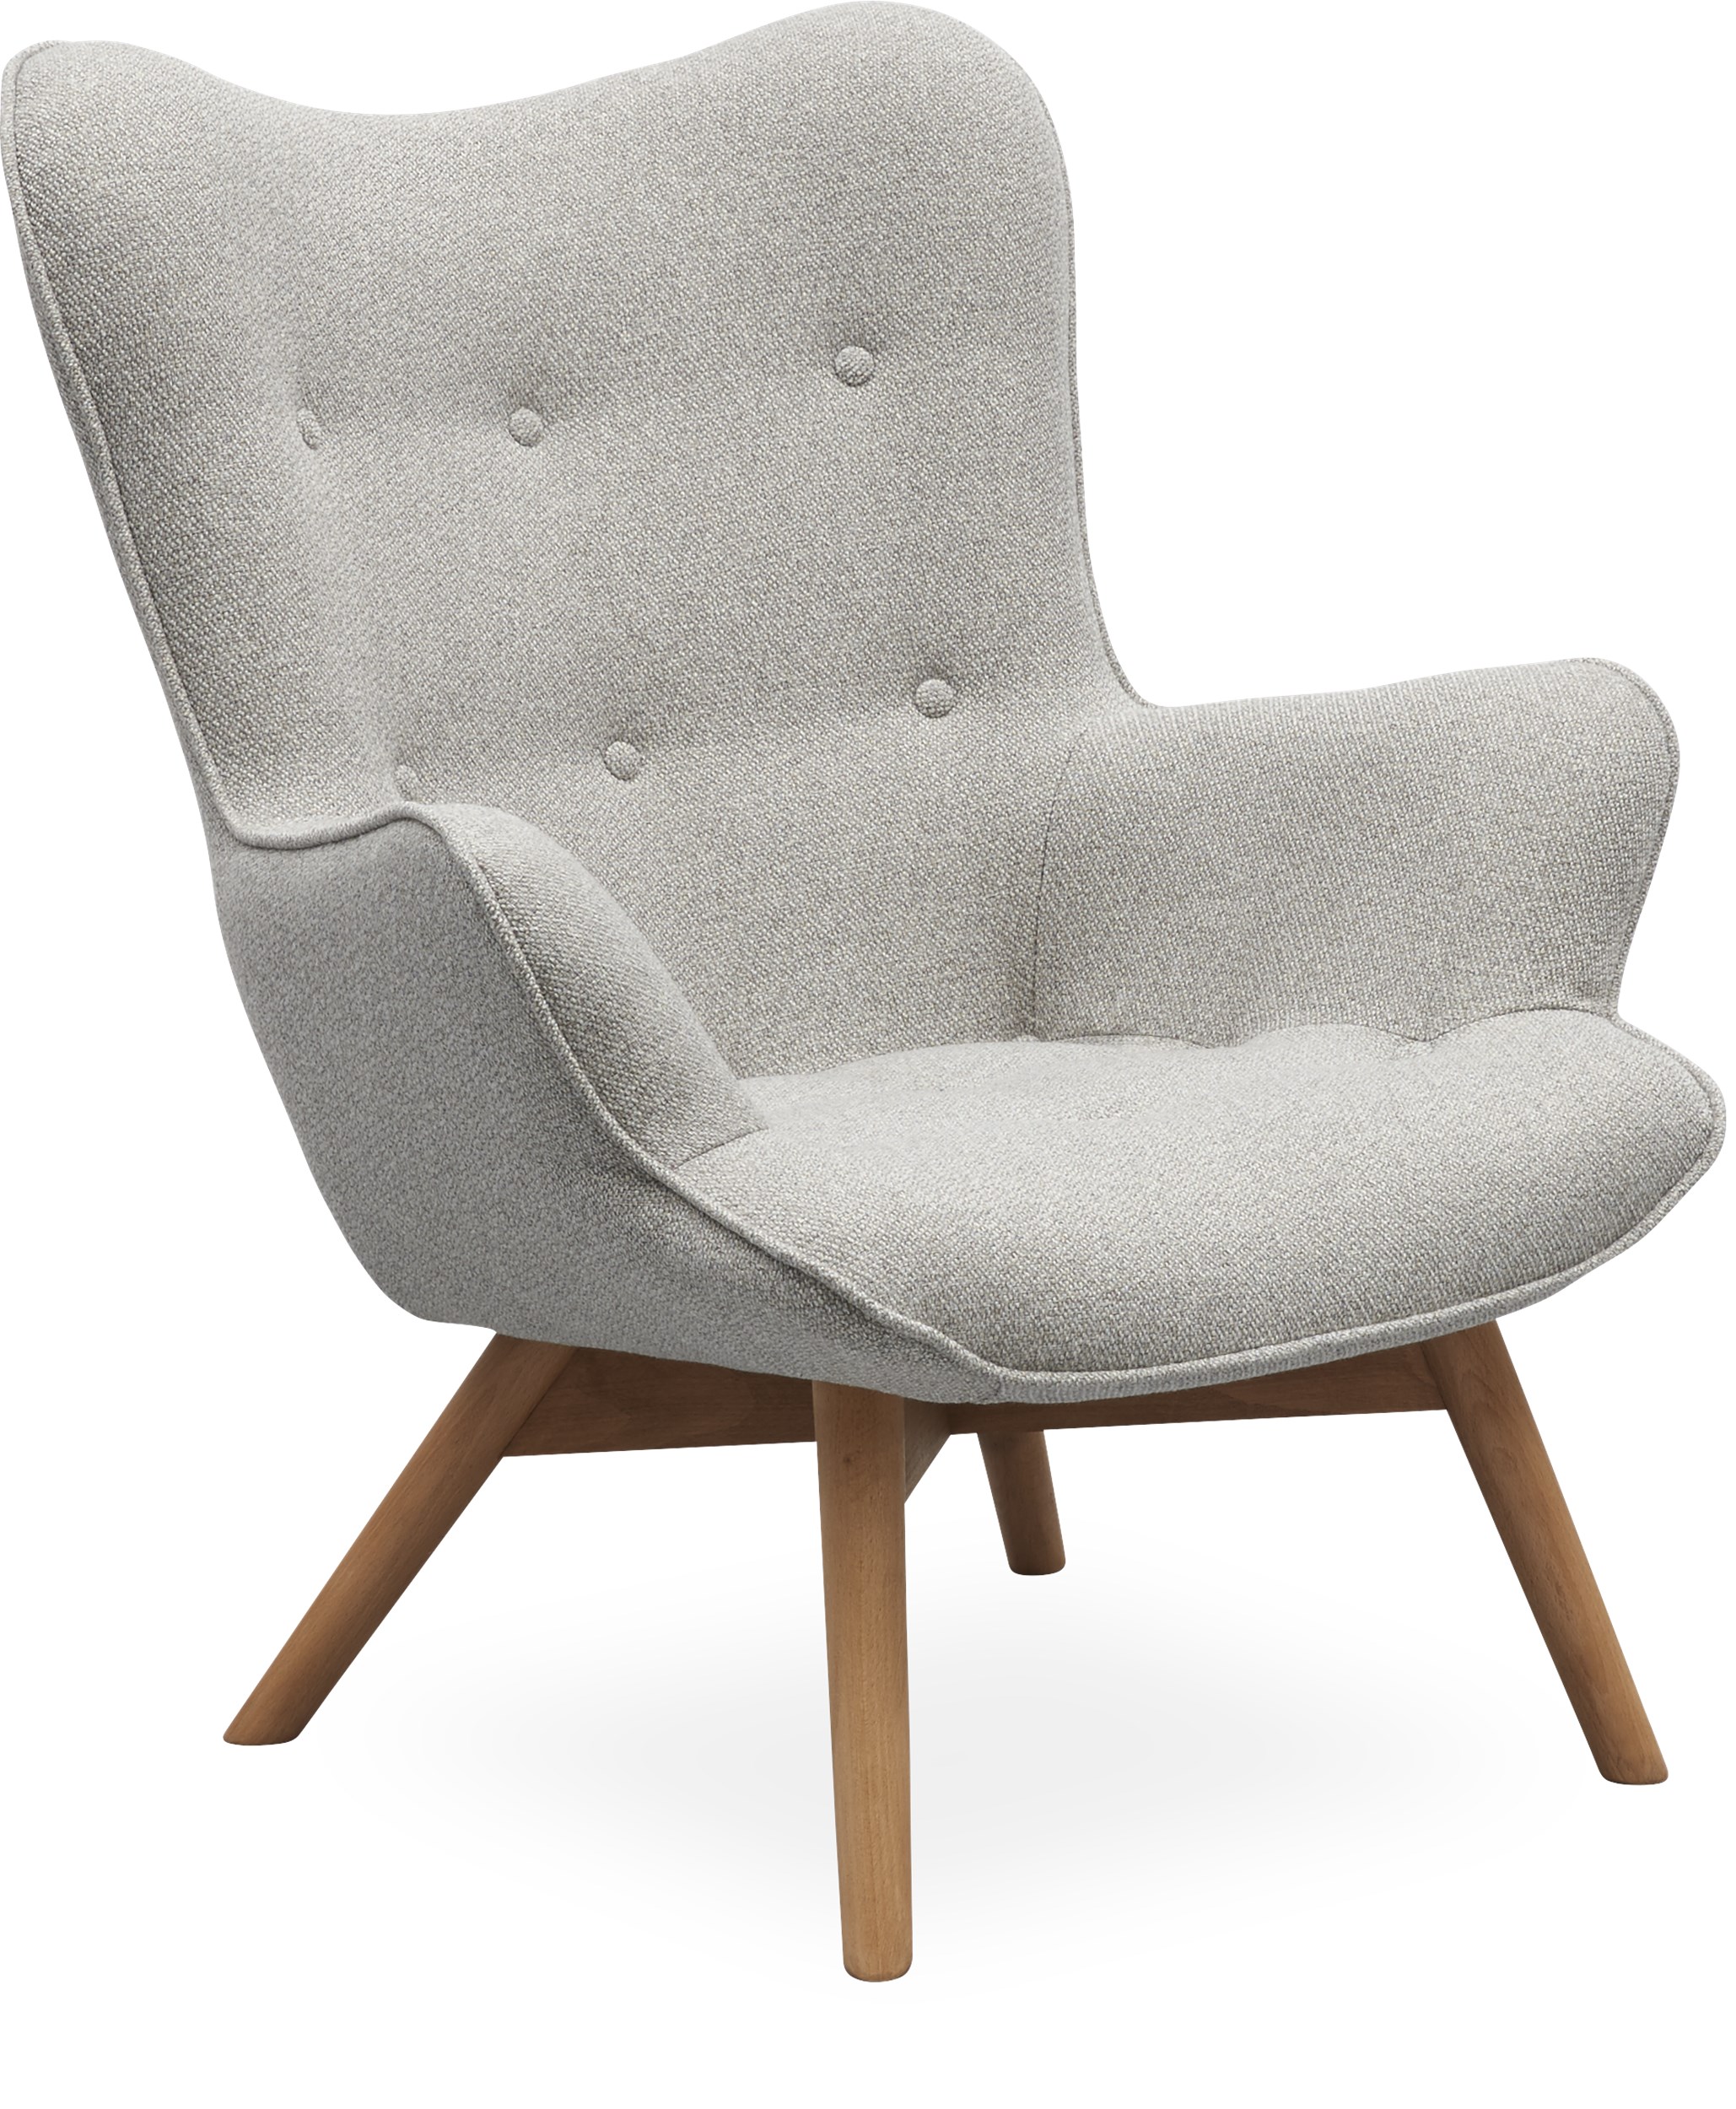 Bliv sammenfiltret Lår dekorere Lænestole til stuen - Køb din nye lænestol online her | ILVA.dk